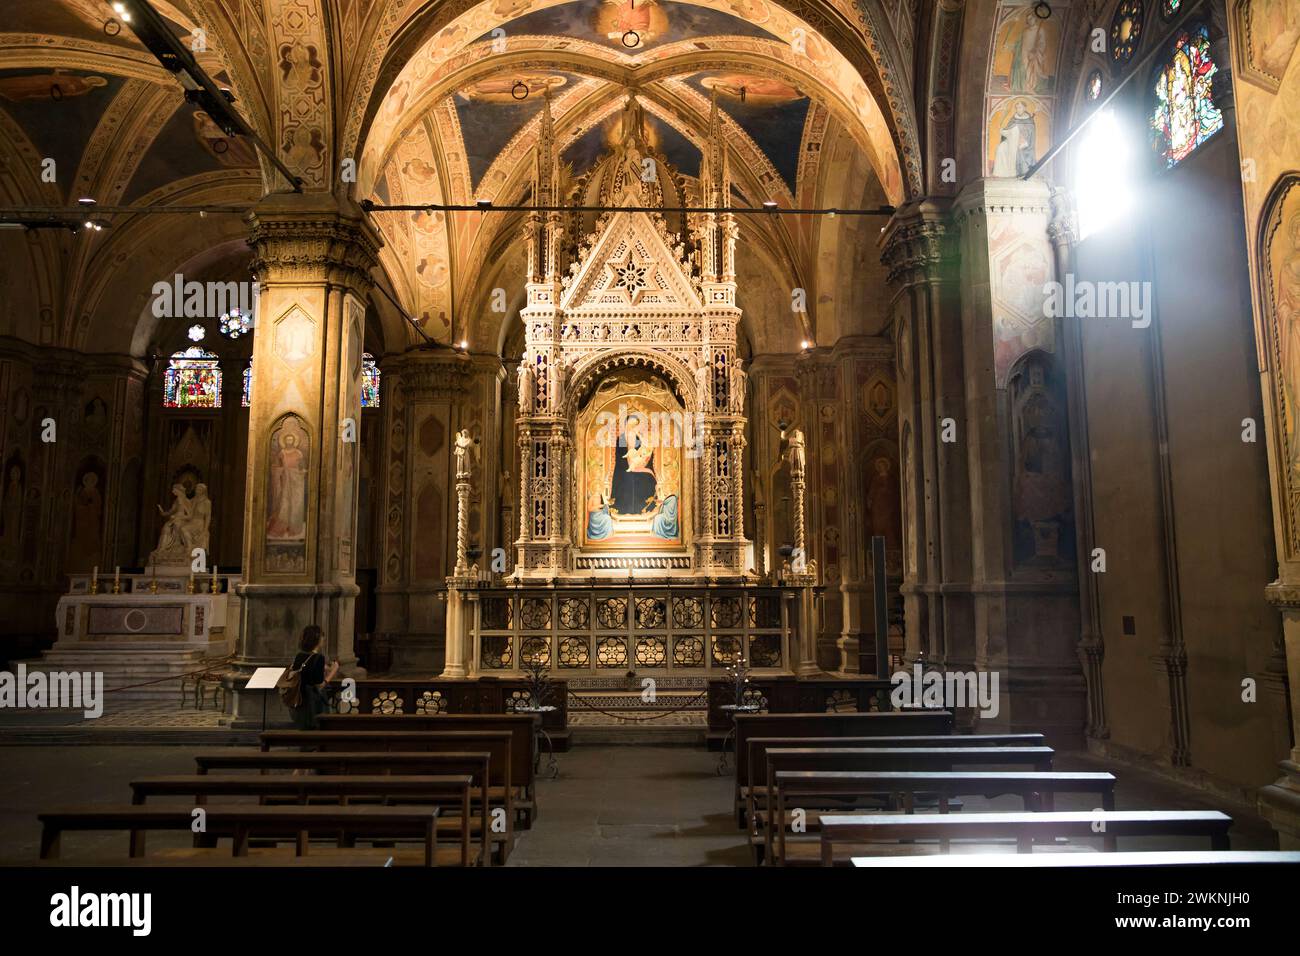 L'église Orsanmichele, autrefois entrepôt gothique, a été transformée en église après qu'une image de la Vierge est apparue à l'intérieur. De nombreux maîtres de Florence co Banque D'Images